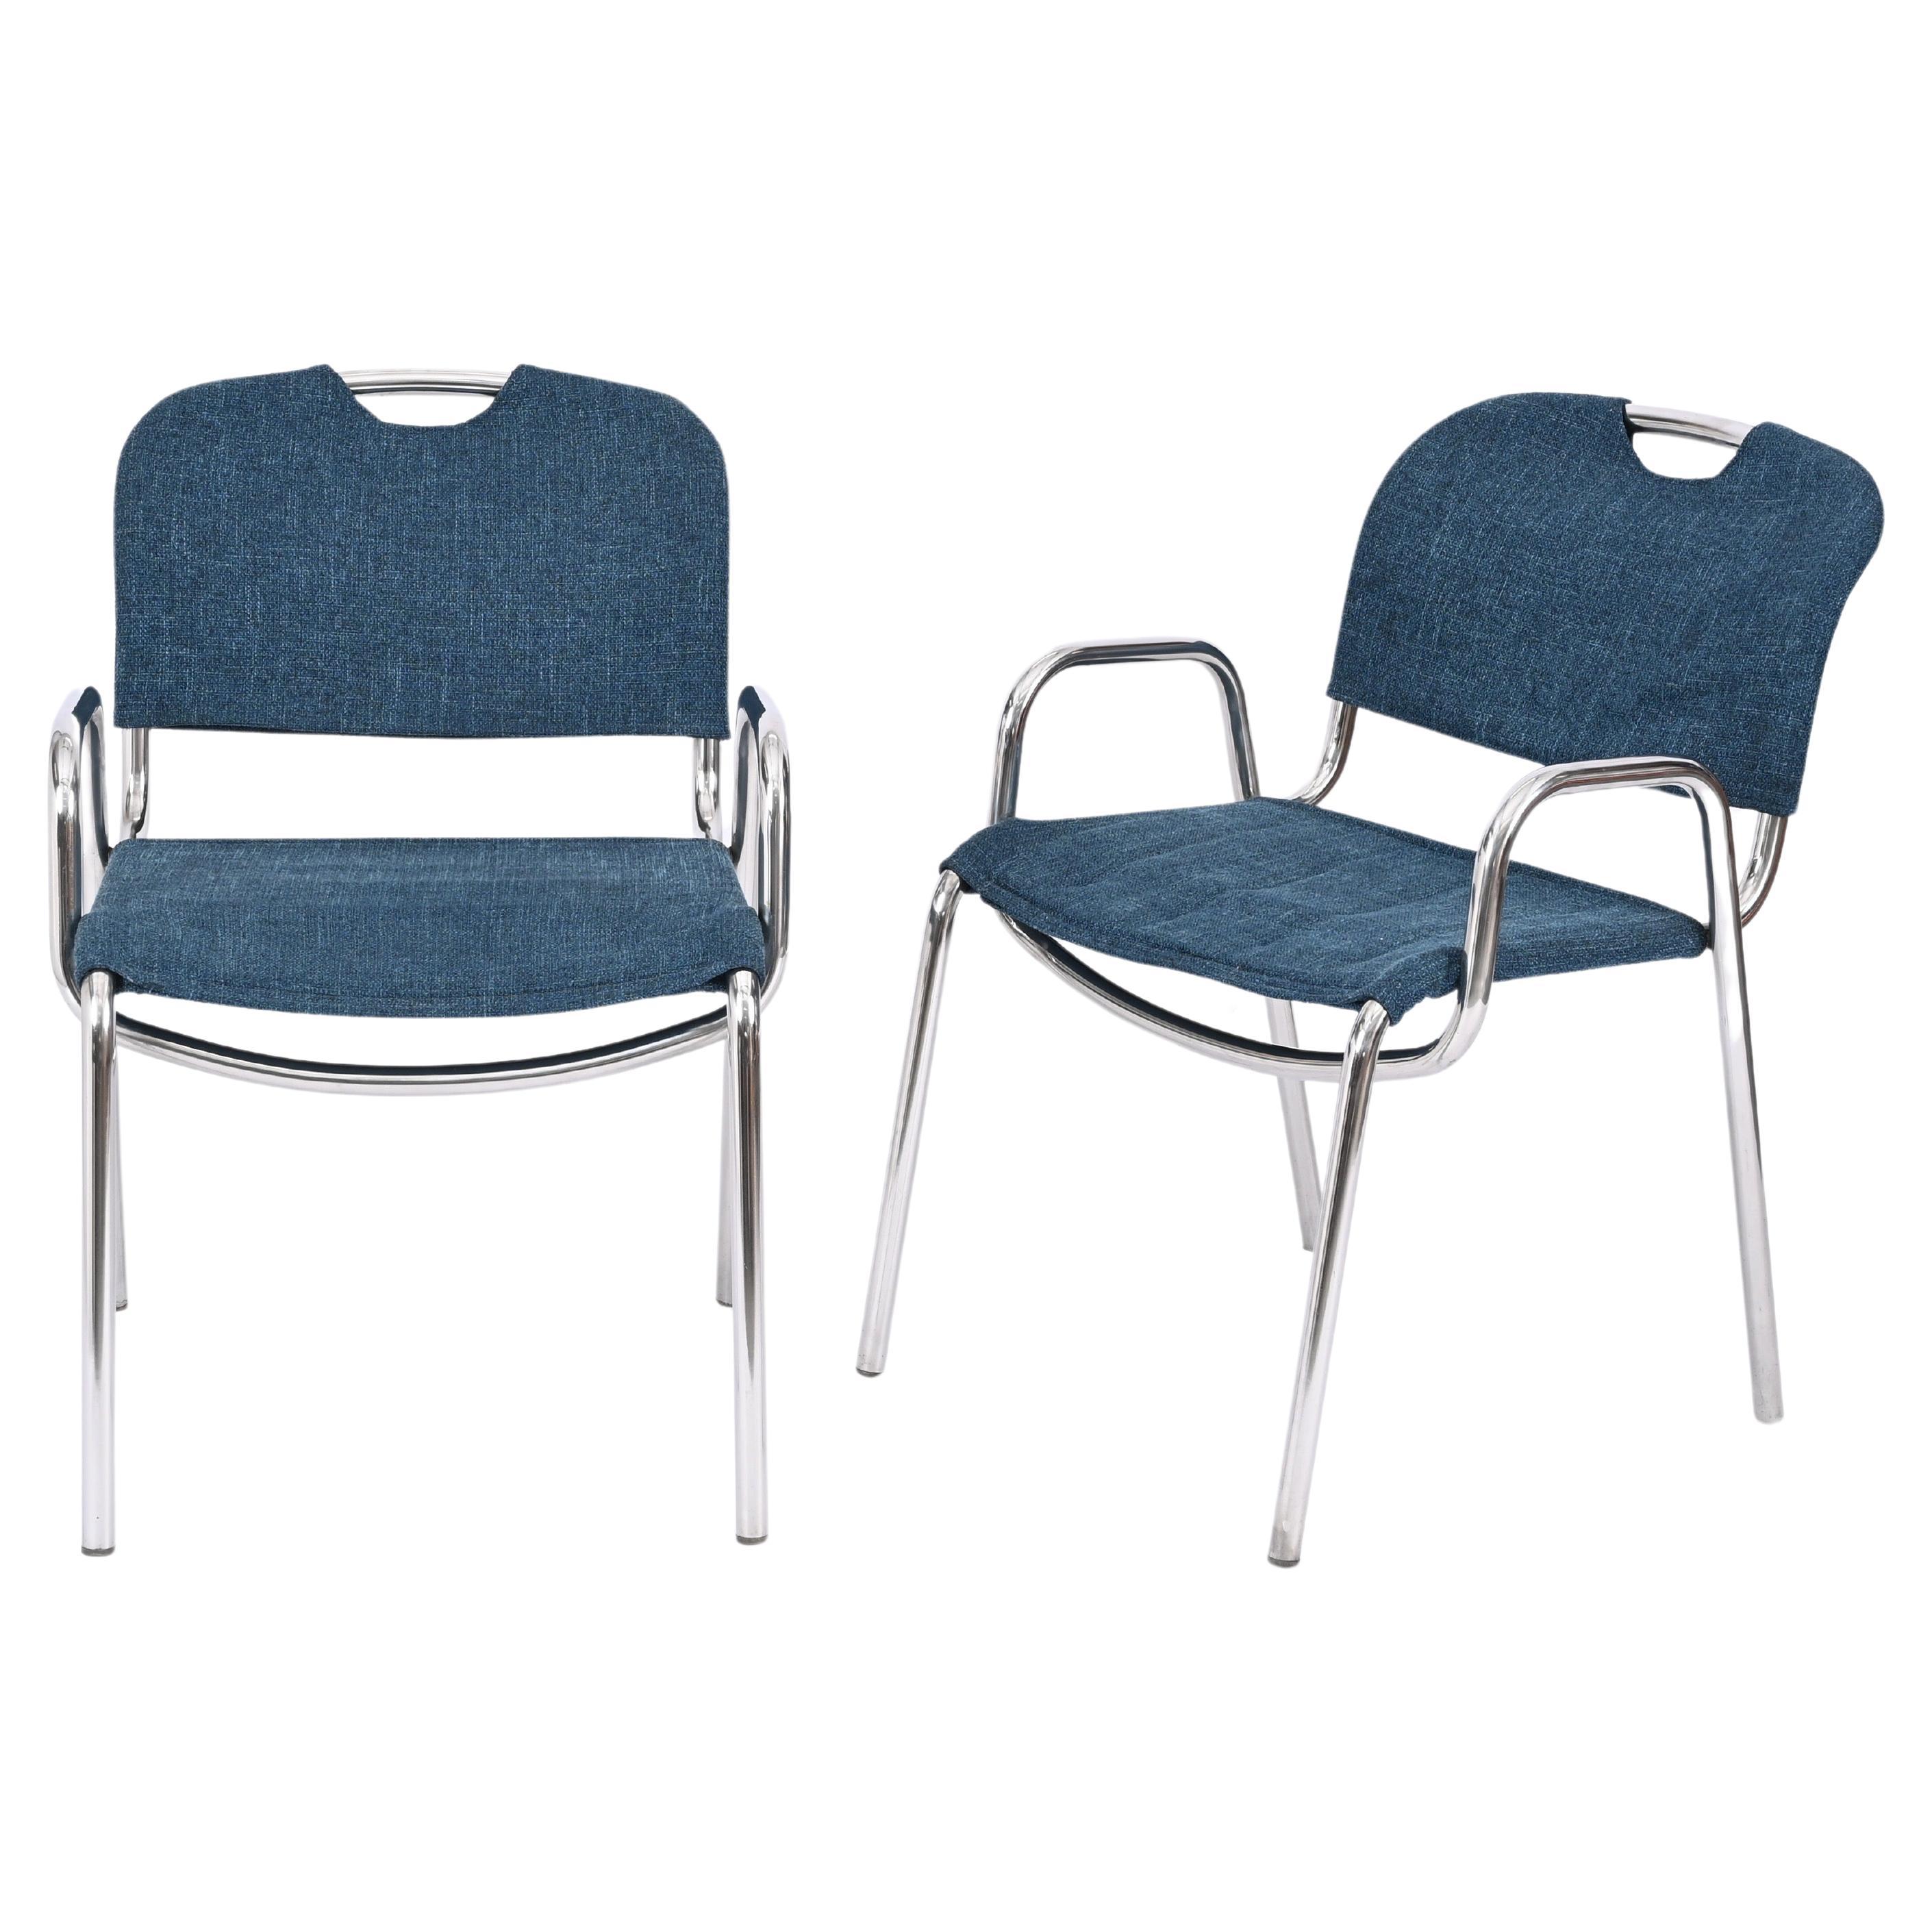 Pair of Blue Castiglietta Dining Chairs by Castiglioni for Zanotta, Italy 1960s For Sale